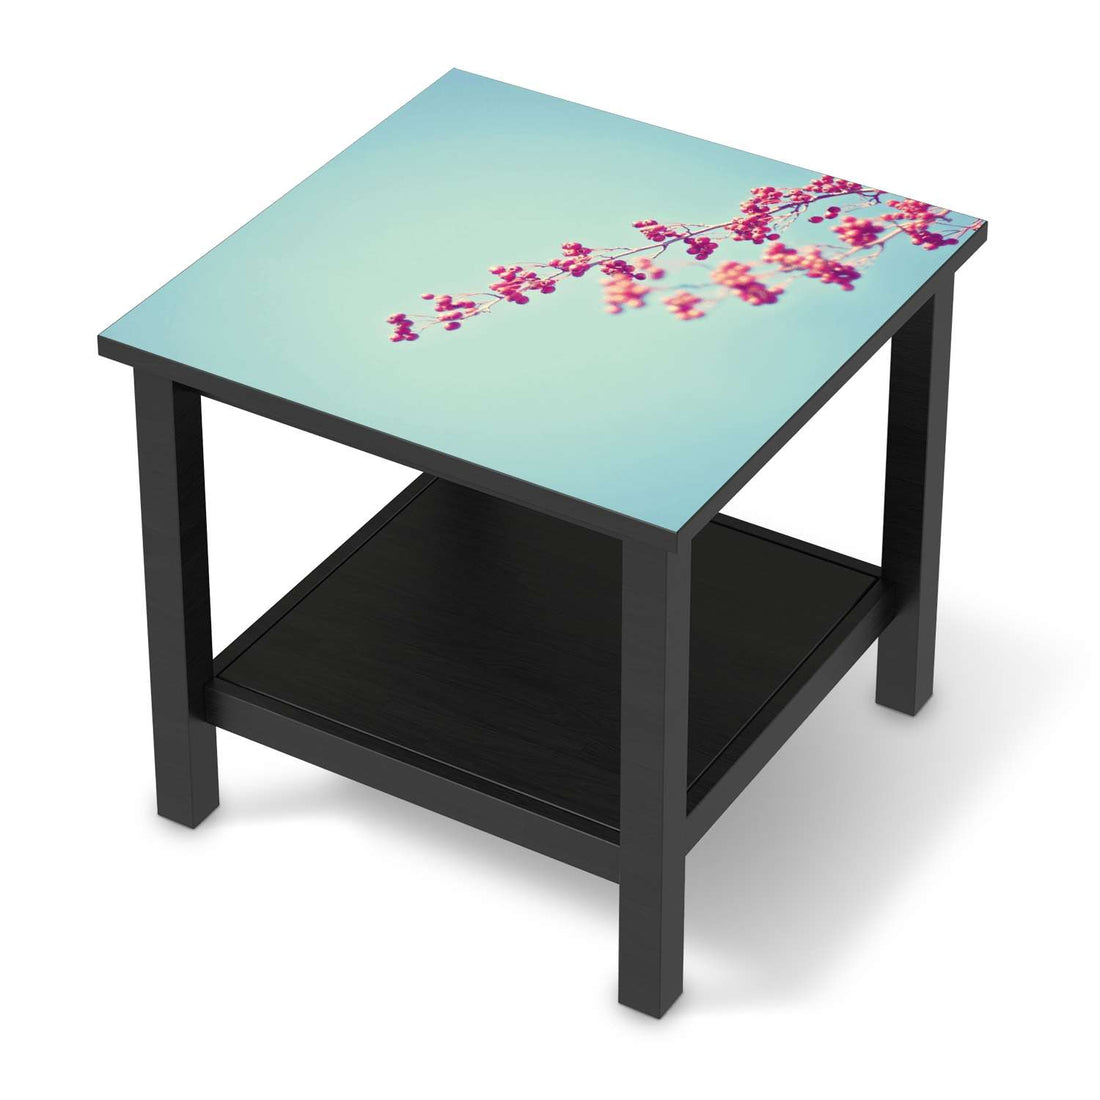 Möbel Klebefolie Ikebana für Anfänger - IKEA Hemnes Beistelltisch 55x55 cm - schwarz